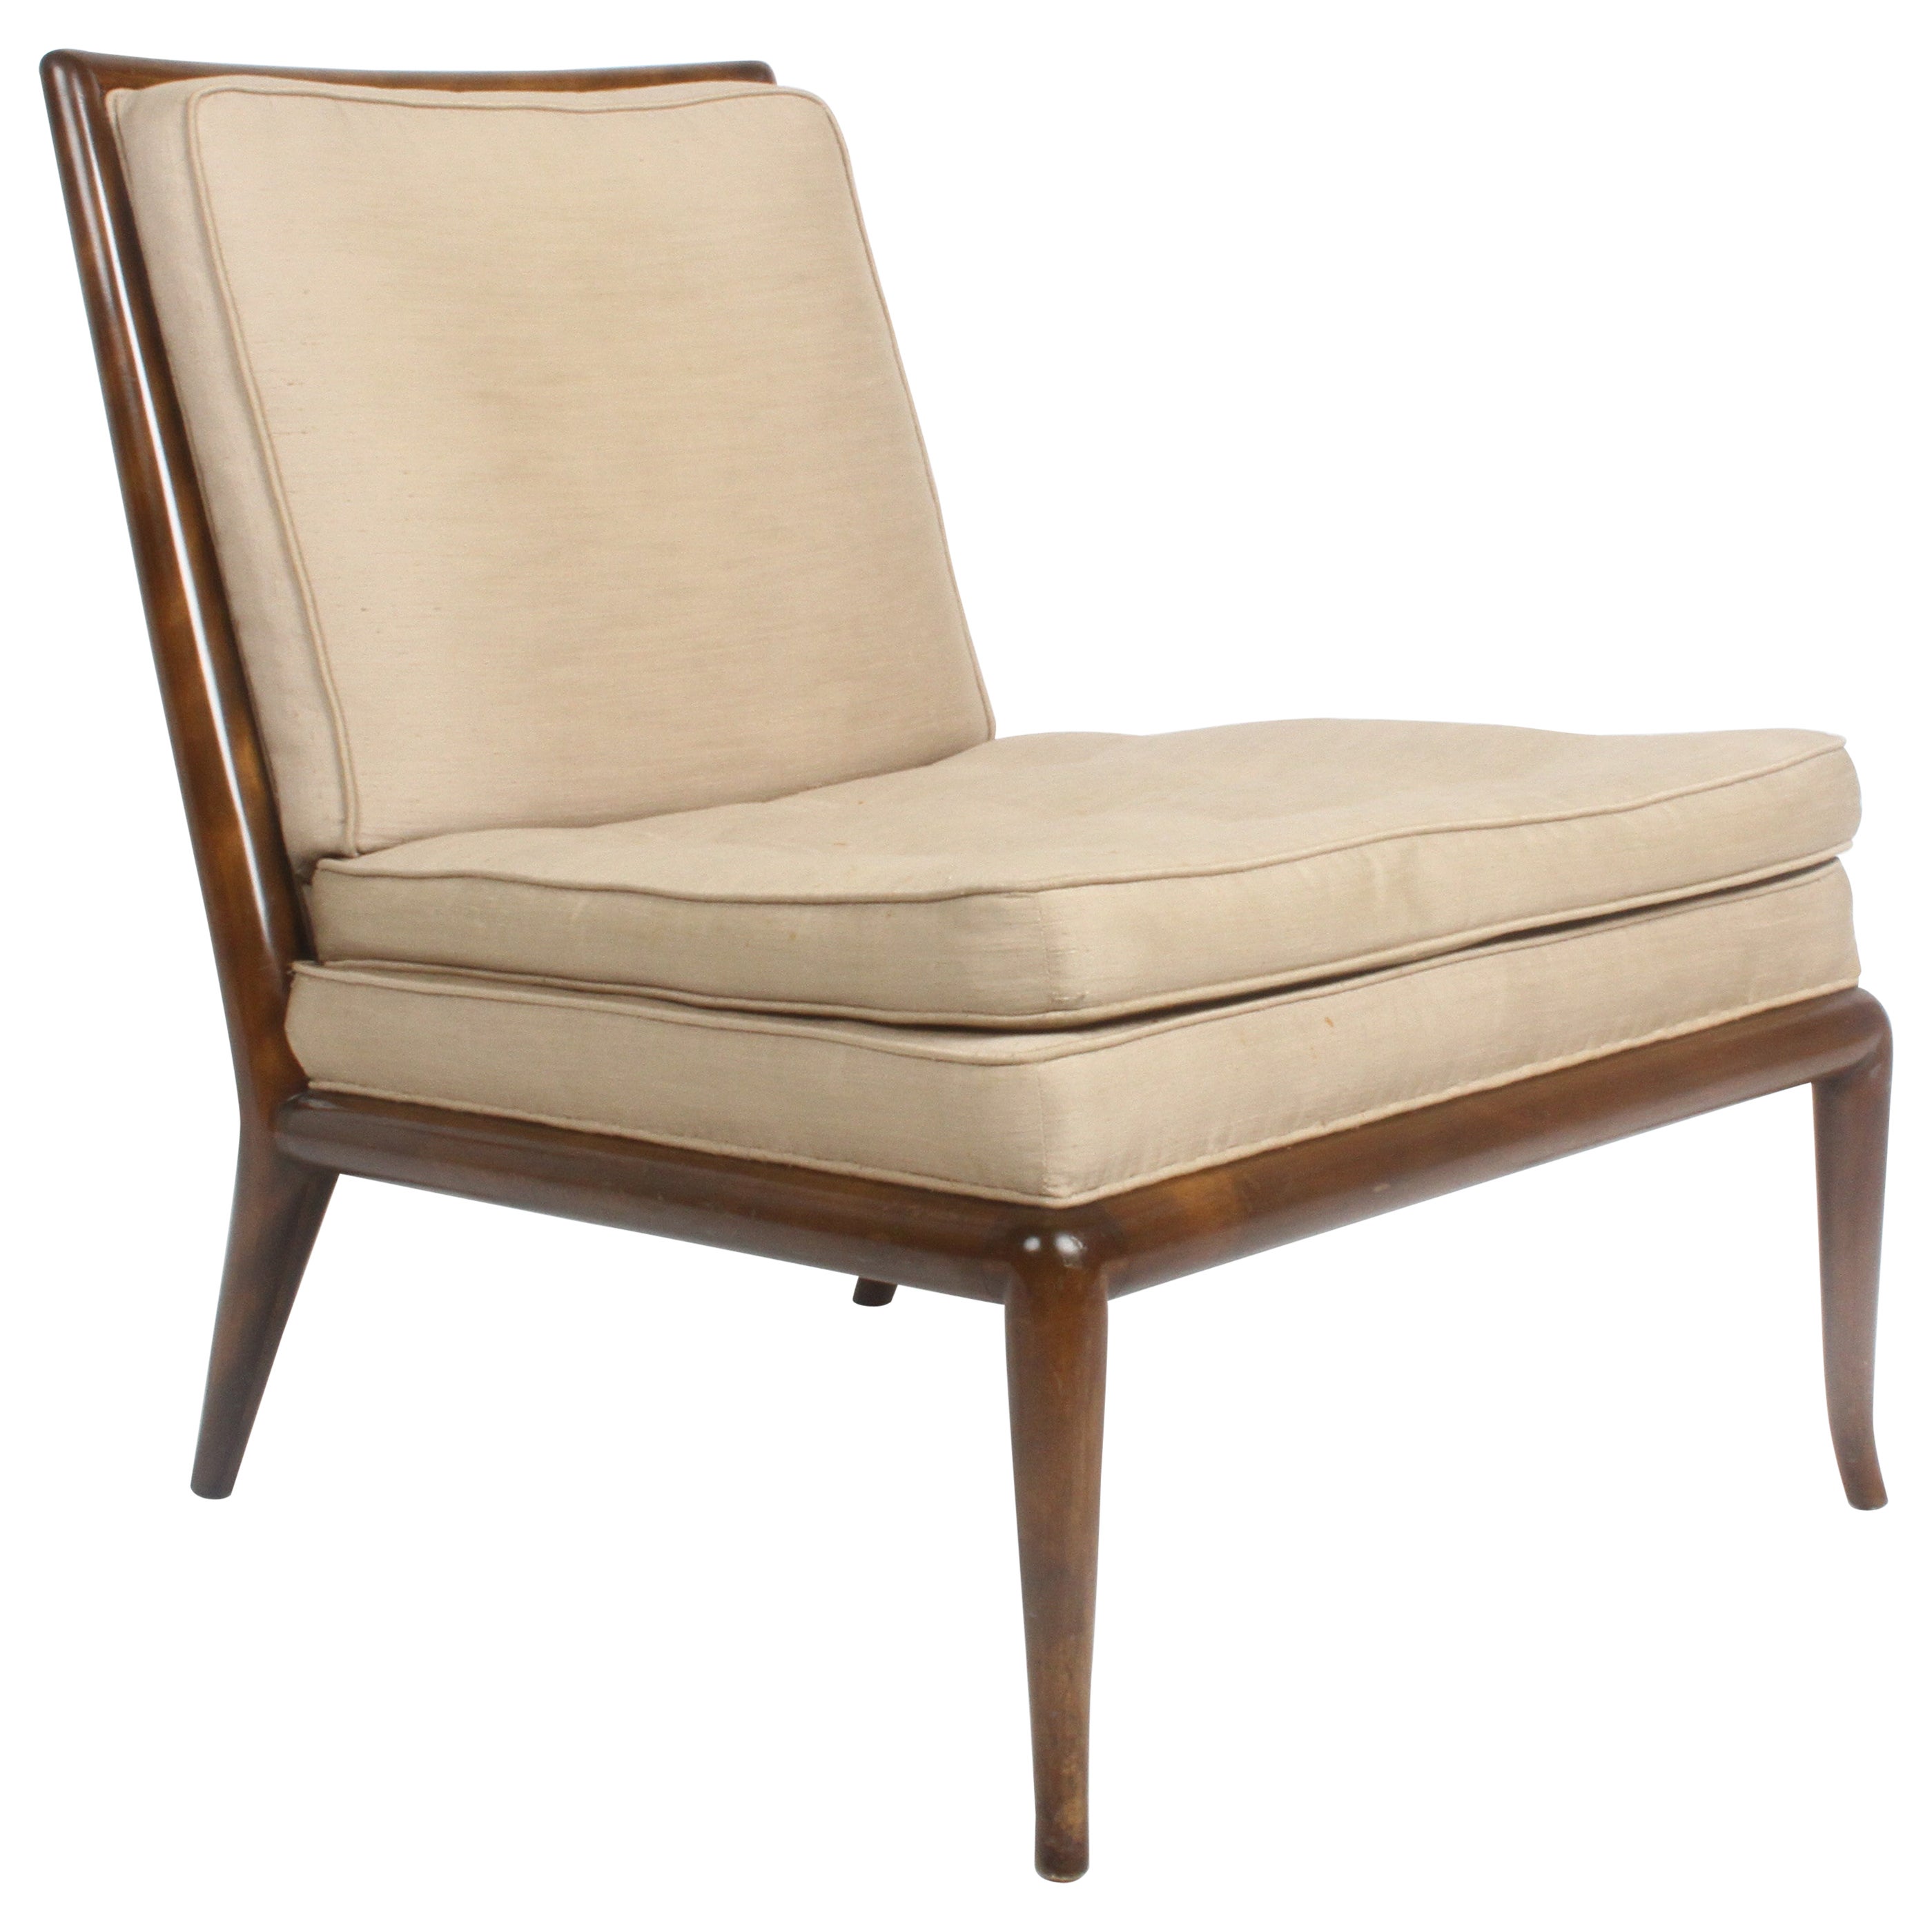 Single T.H. Robsjohn Gibbings for Widdicomb Slipper Chair, Elegant Walnut Frame